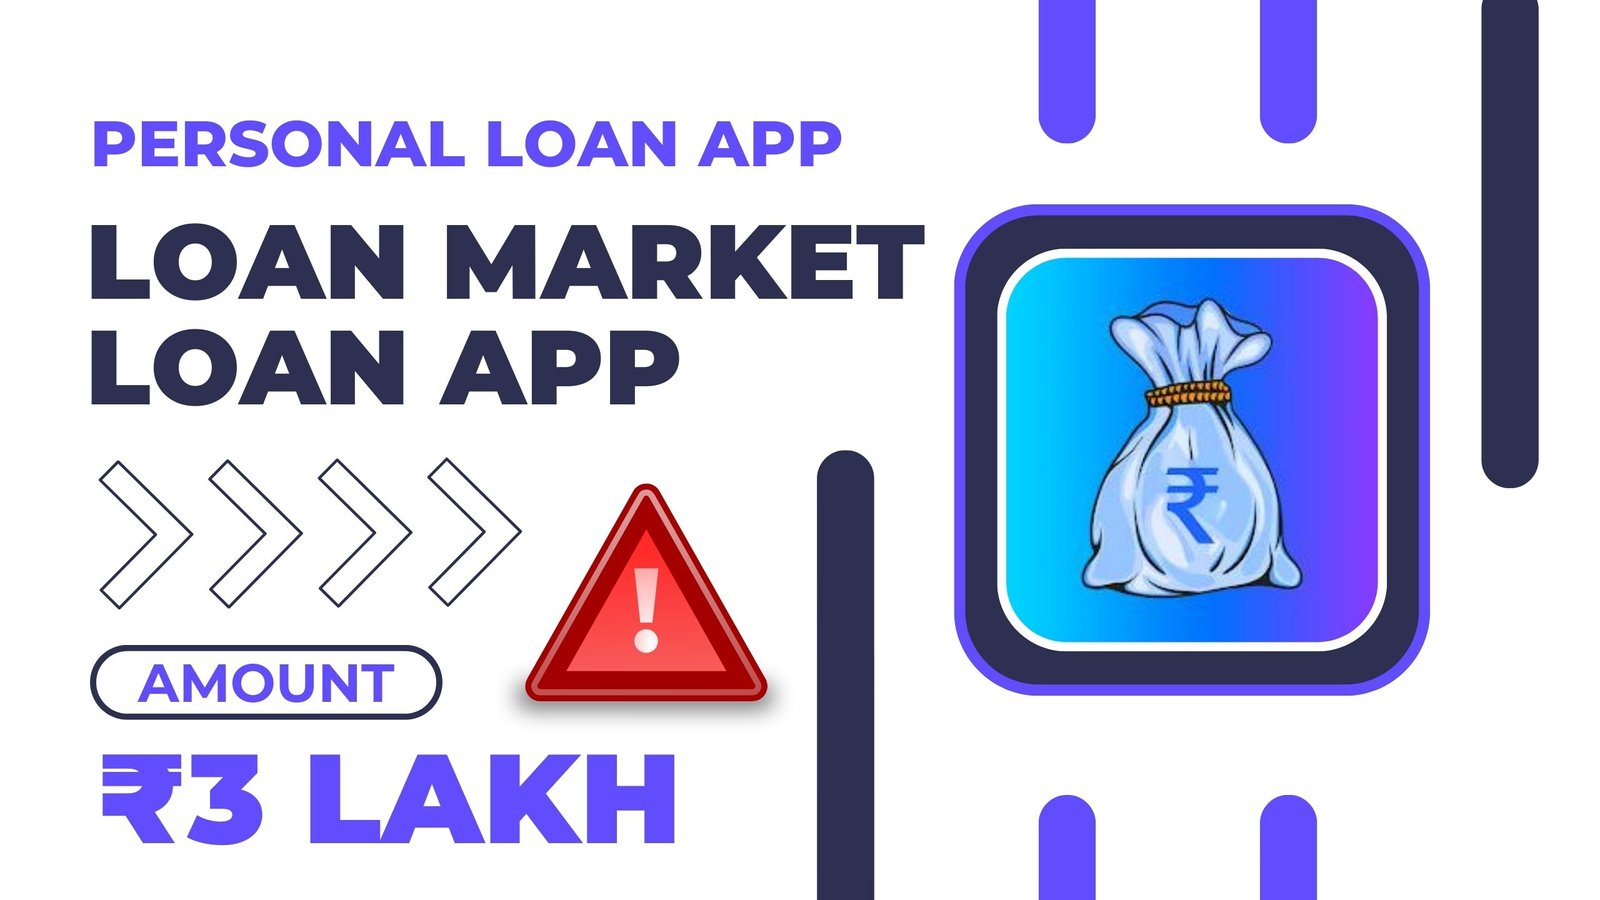 Loan Market Loan App Loan Amount